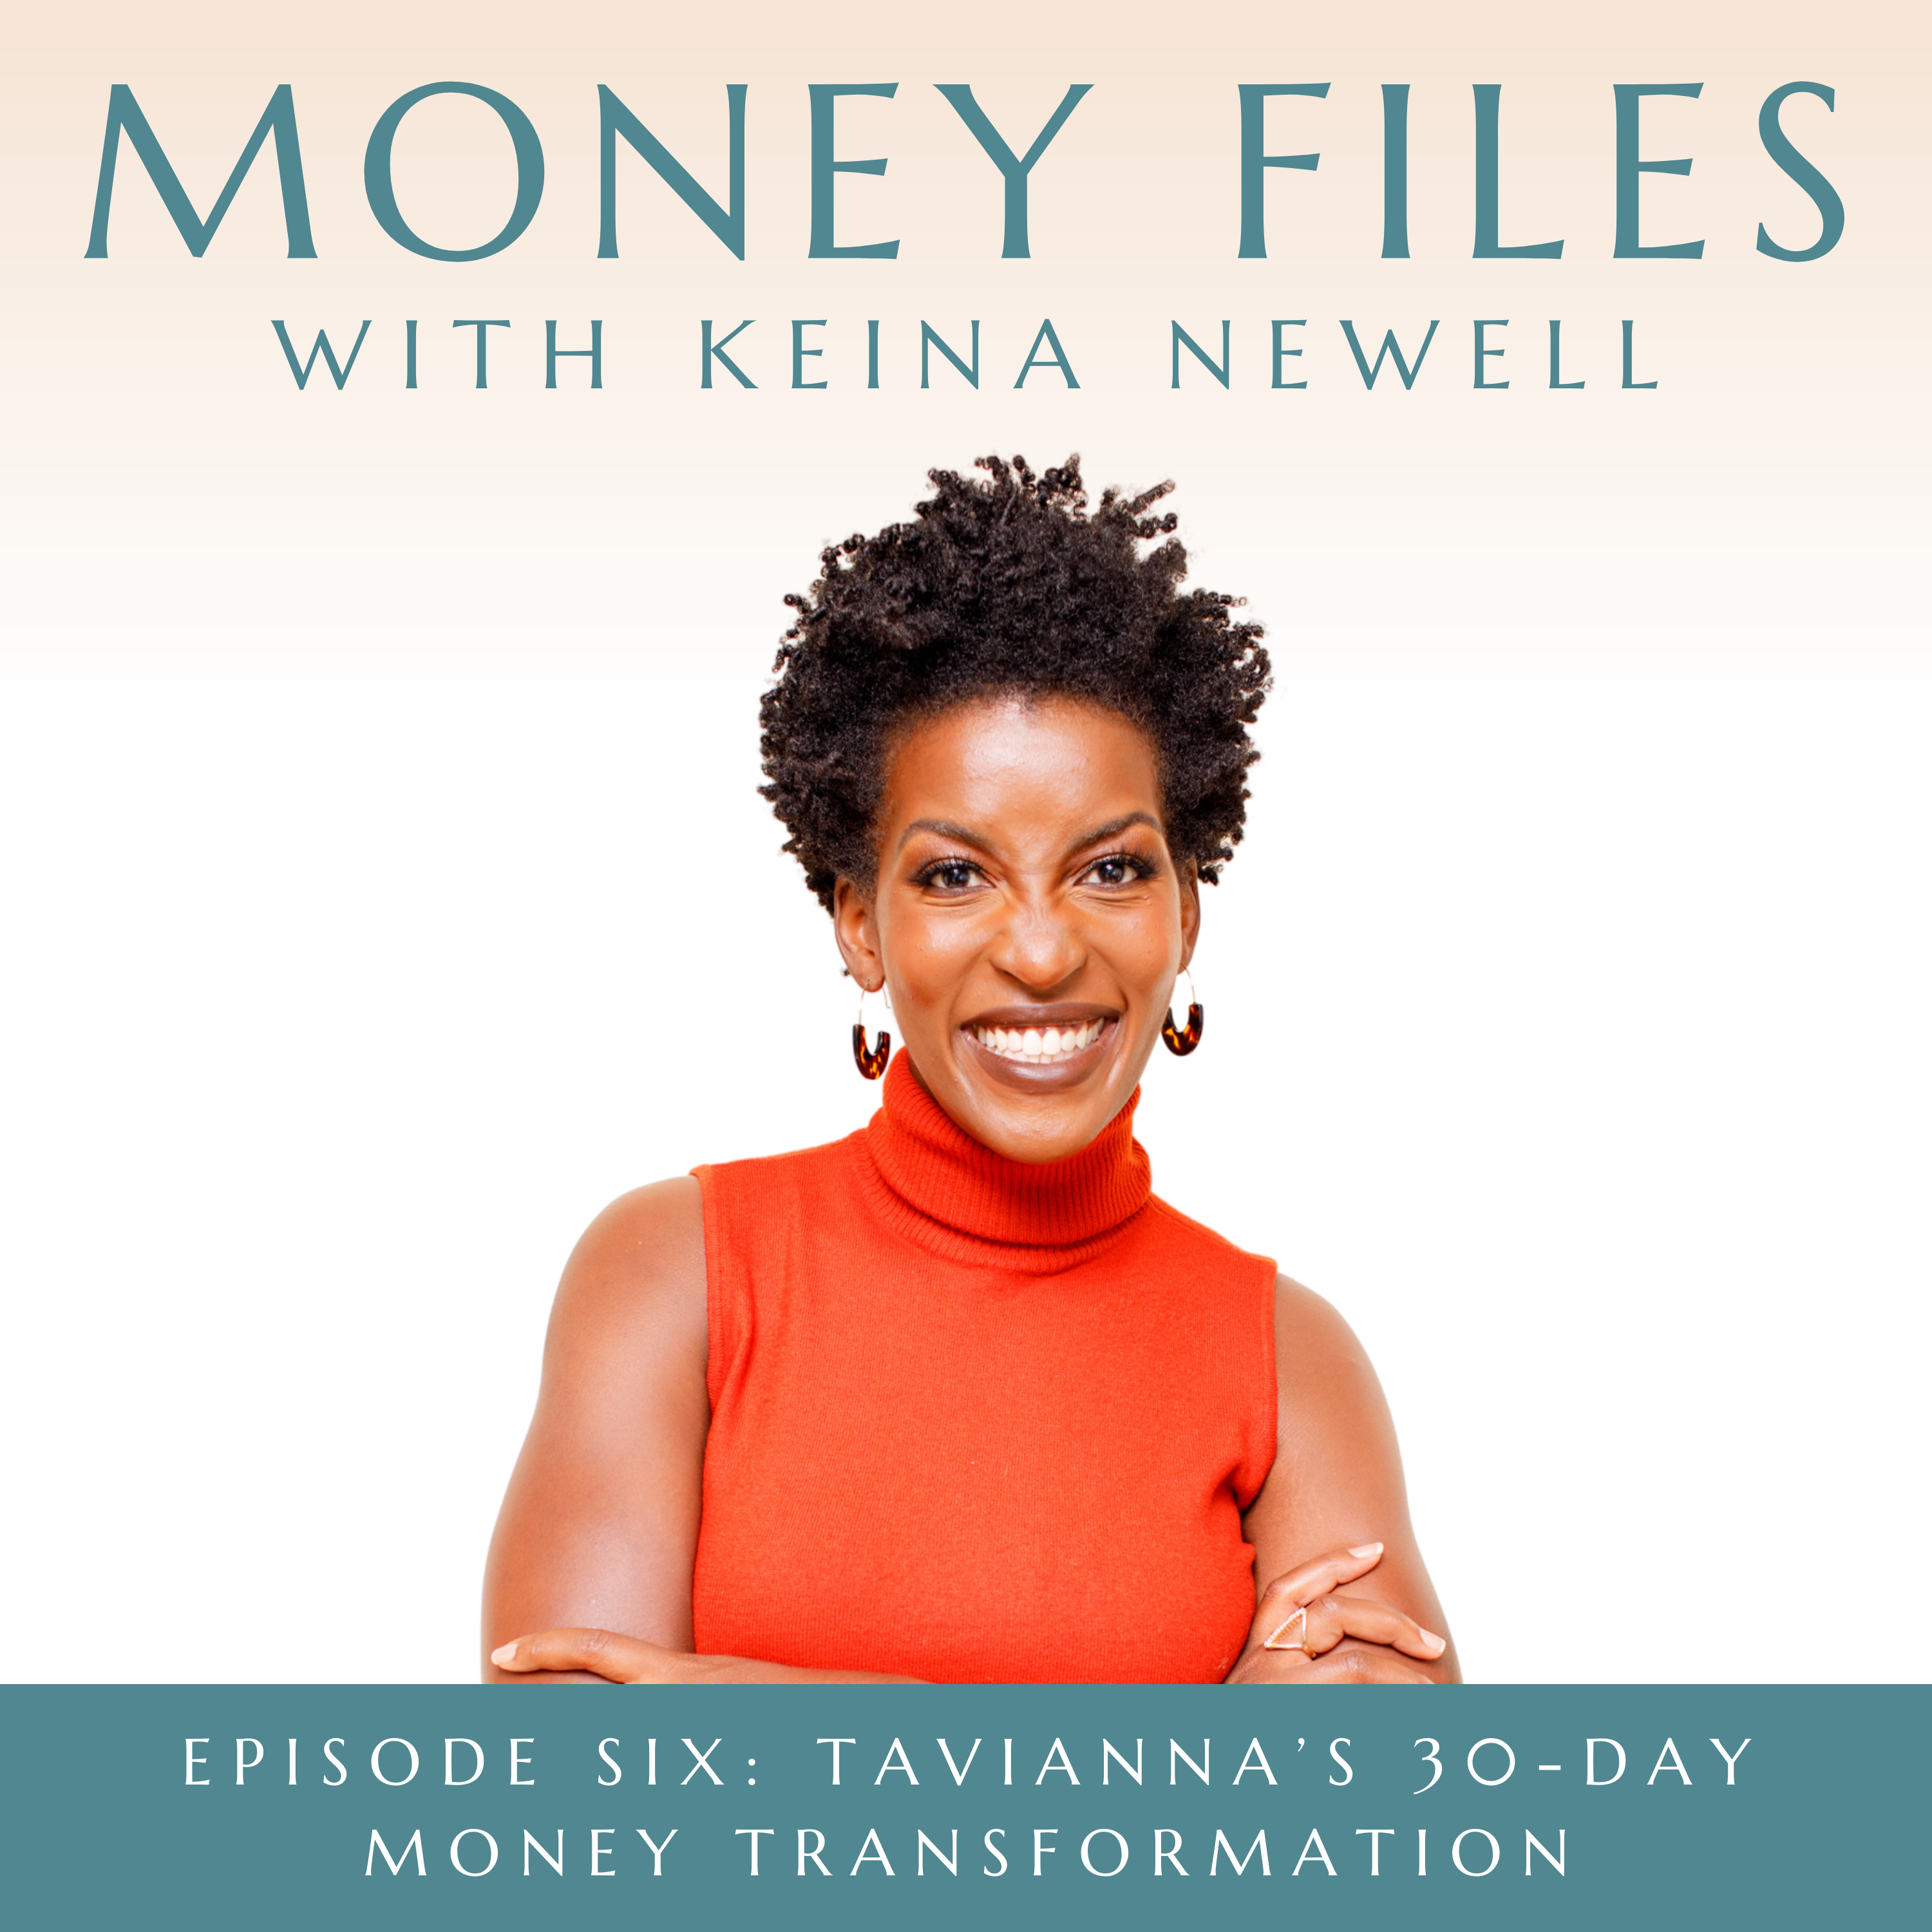 Tavianna's 30-Day Money Transformation